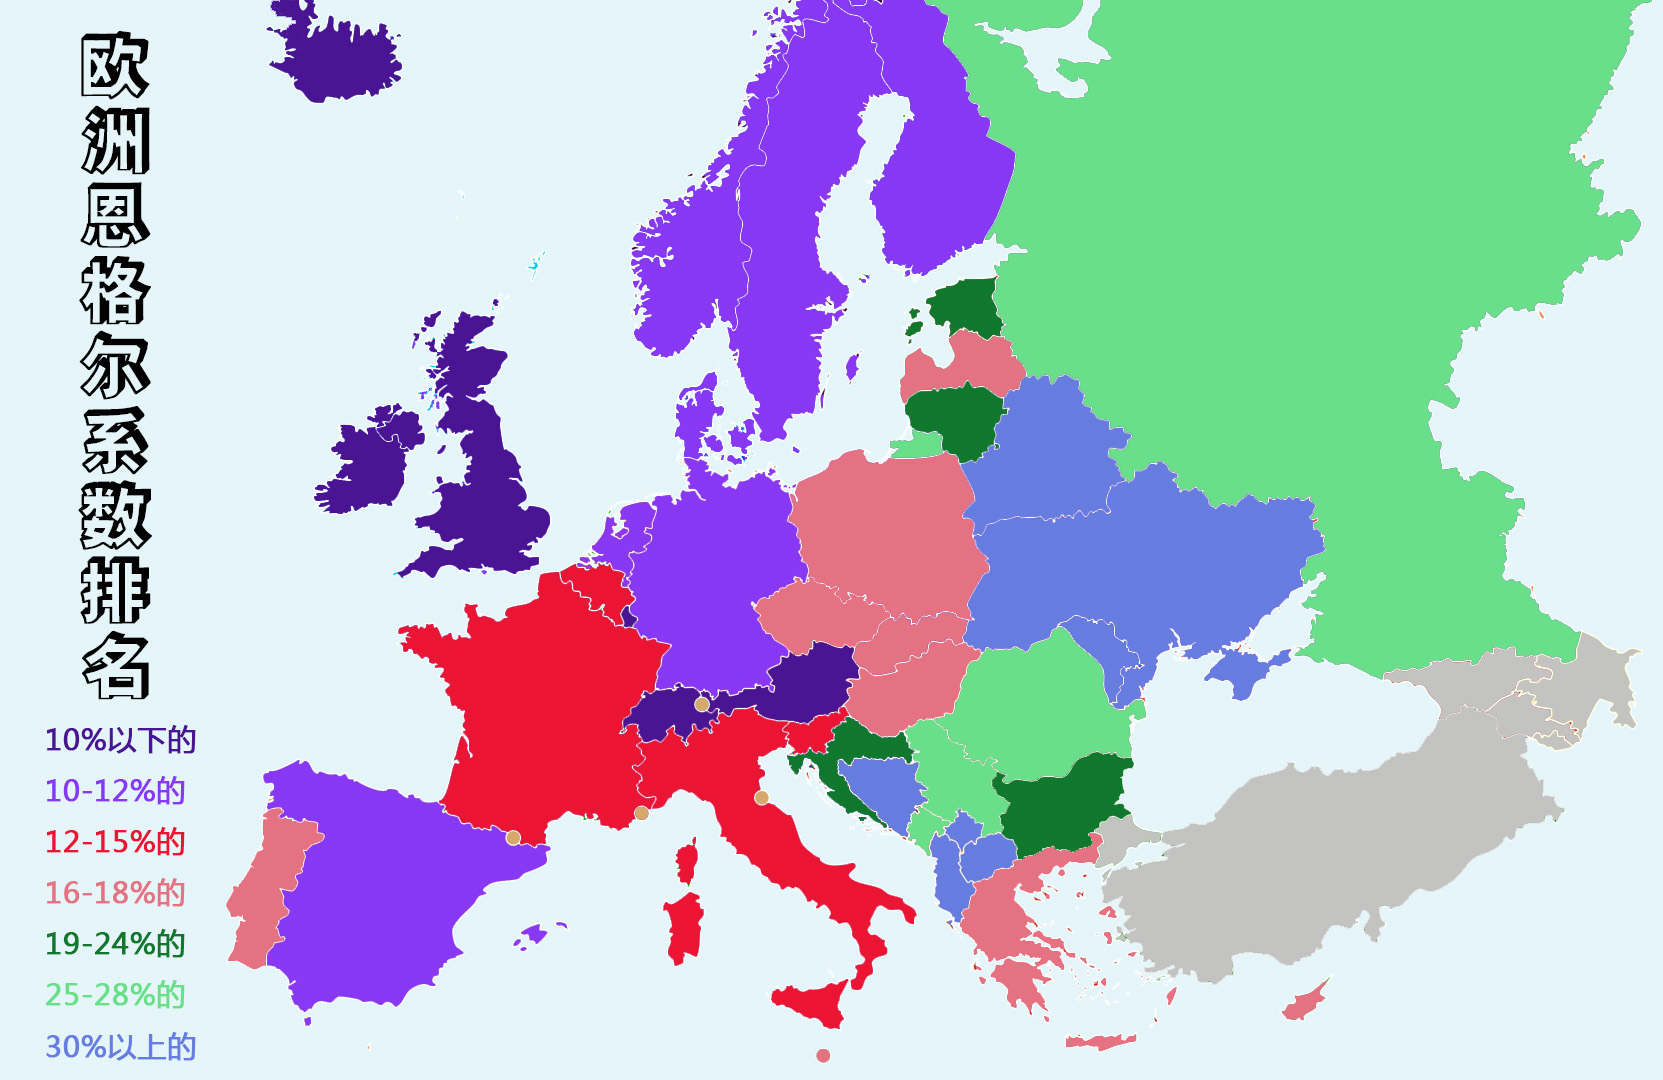 欧洲国家人口数量排名详解，欧洲国家各类排名详解？